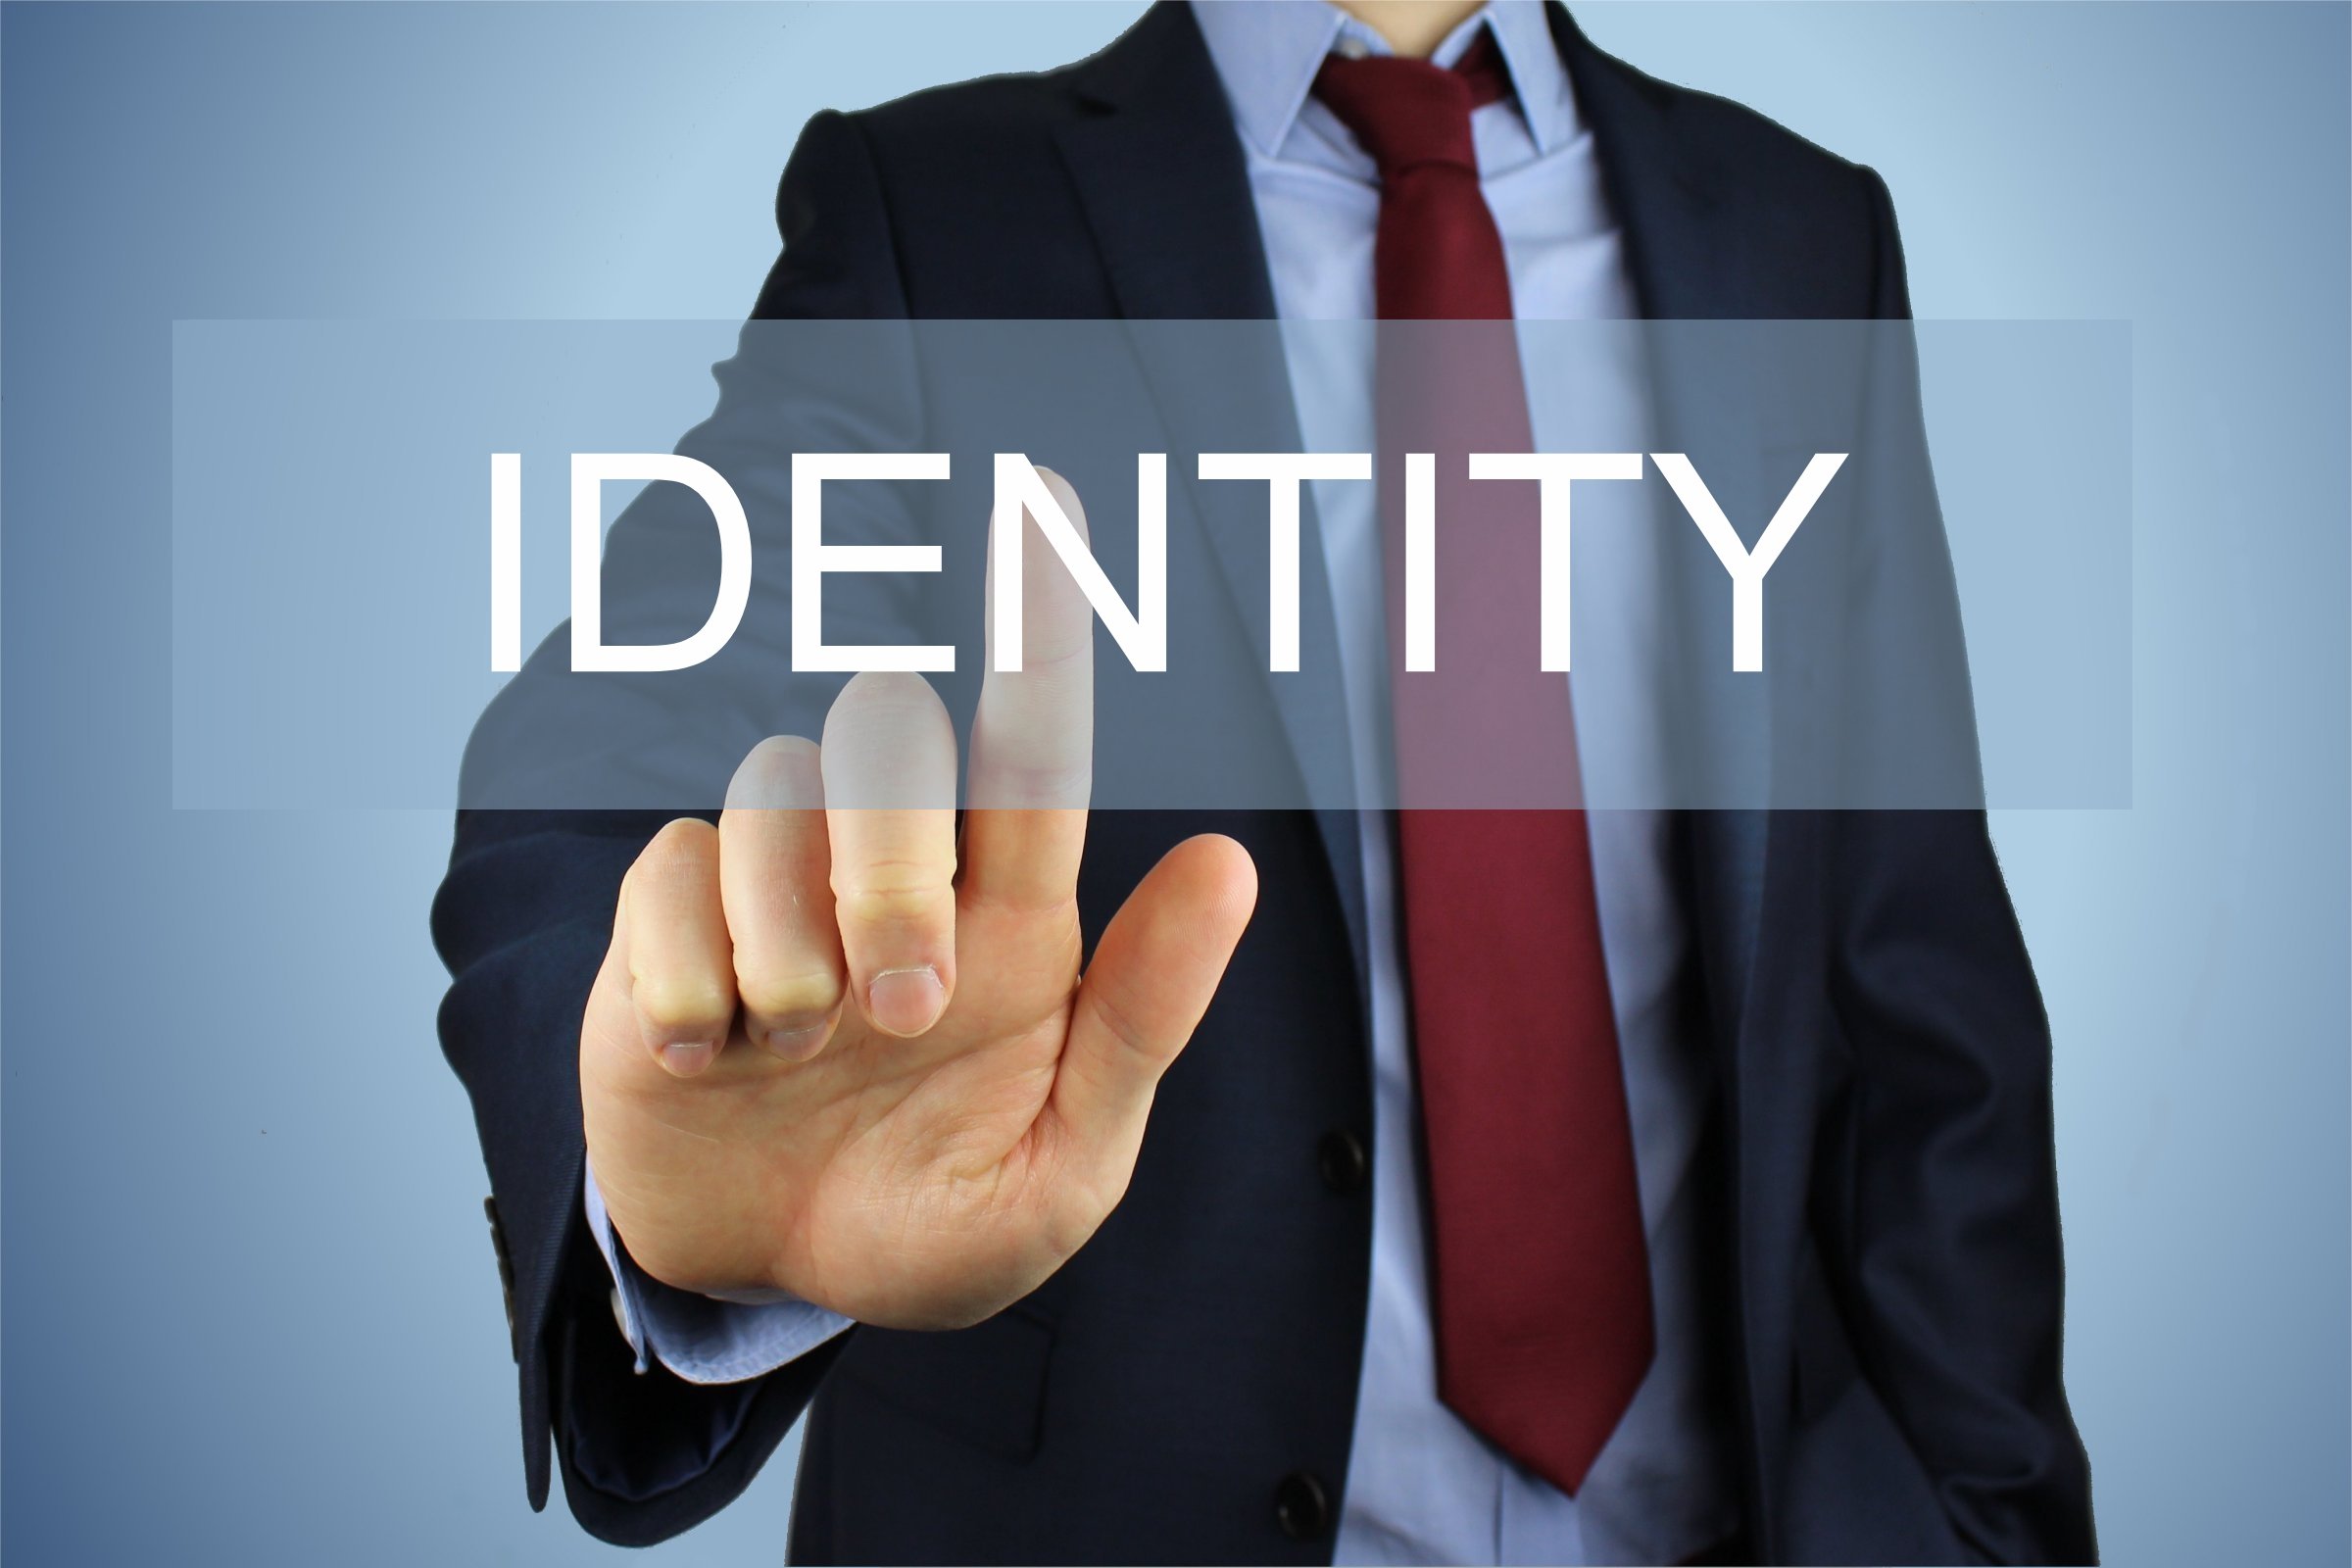 O que significa identity?